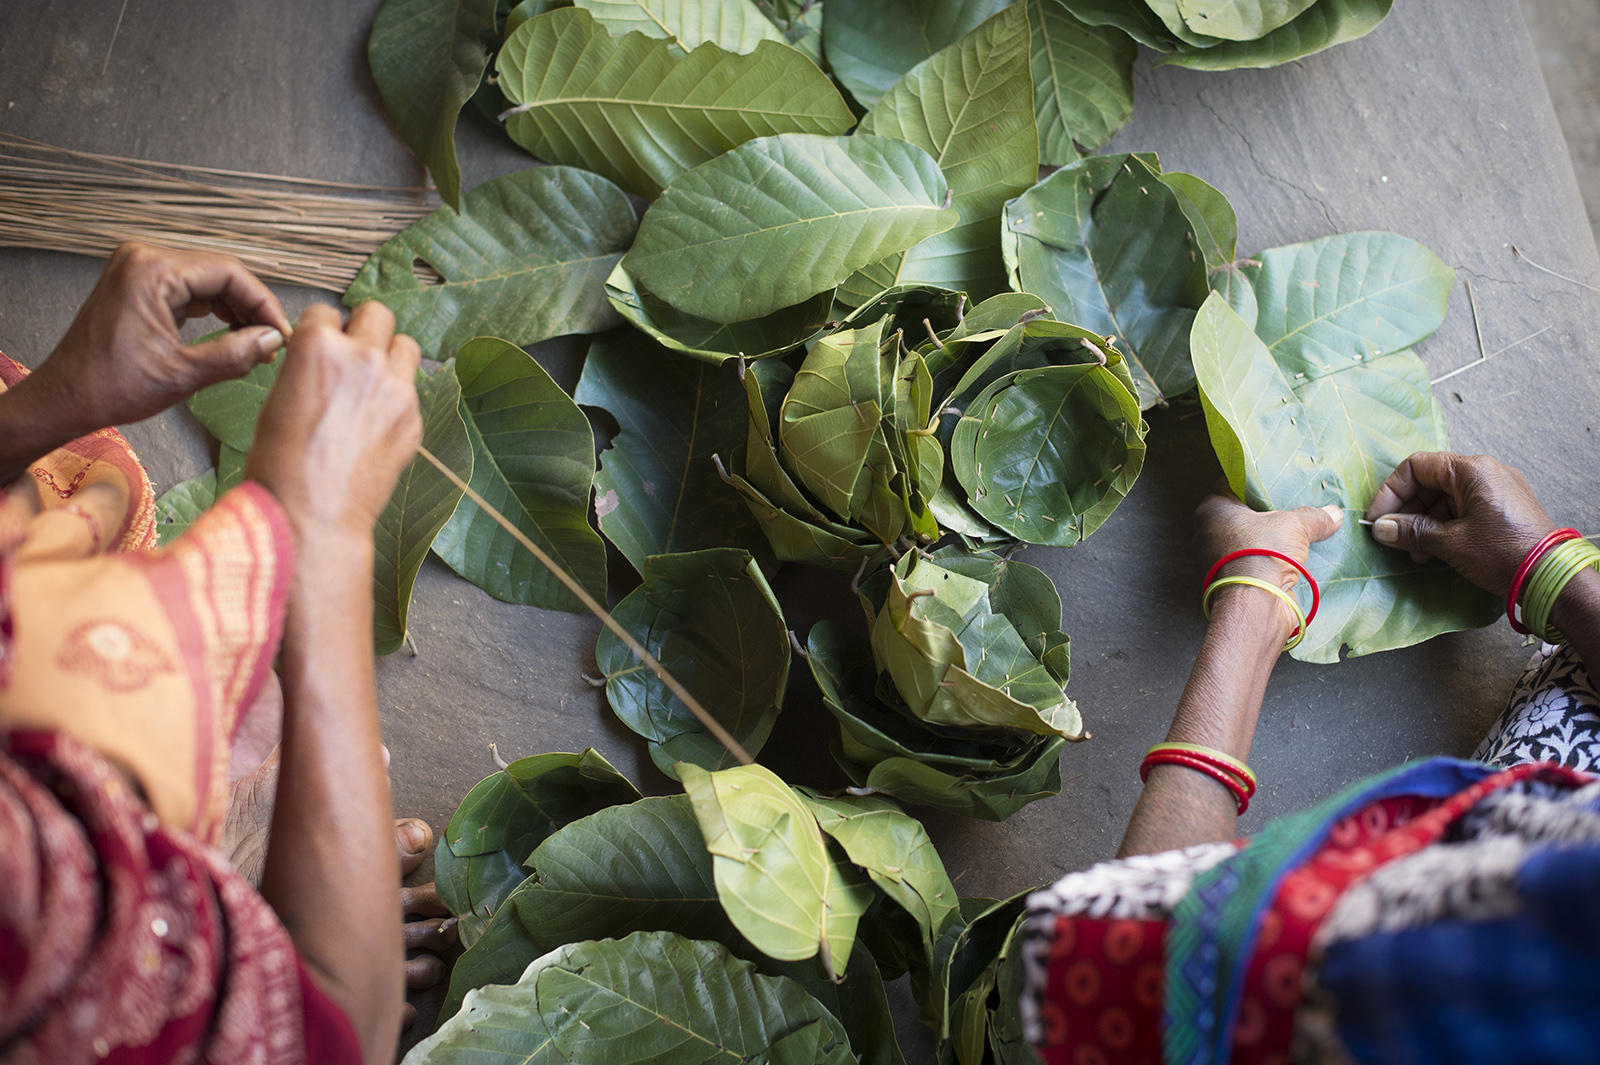 Des femmes de l’état d’Odisha (Inde) fabriquent des petites assiettes avec des feuilles de sal, pour acquérir une petite autonomie financière.